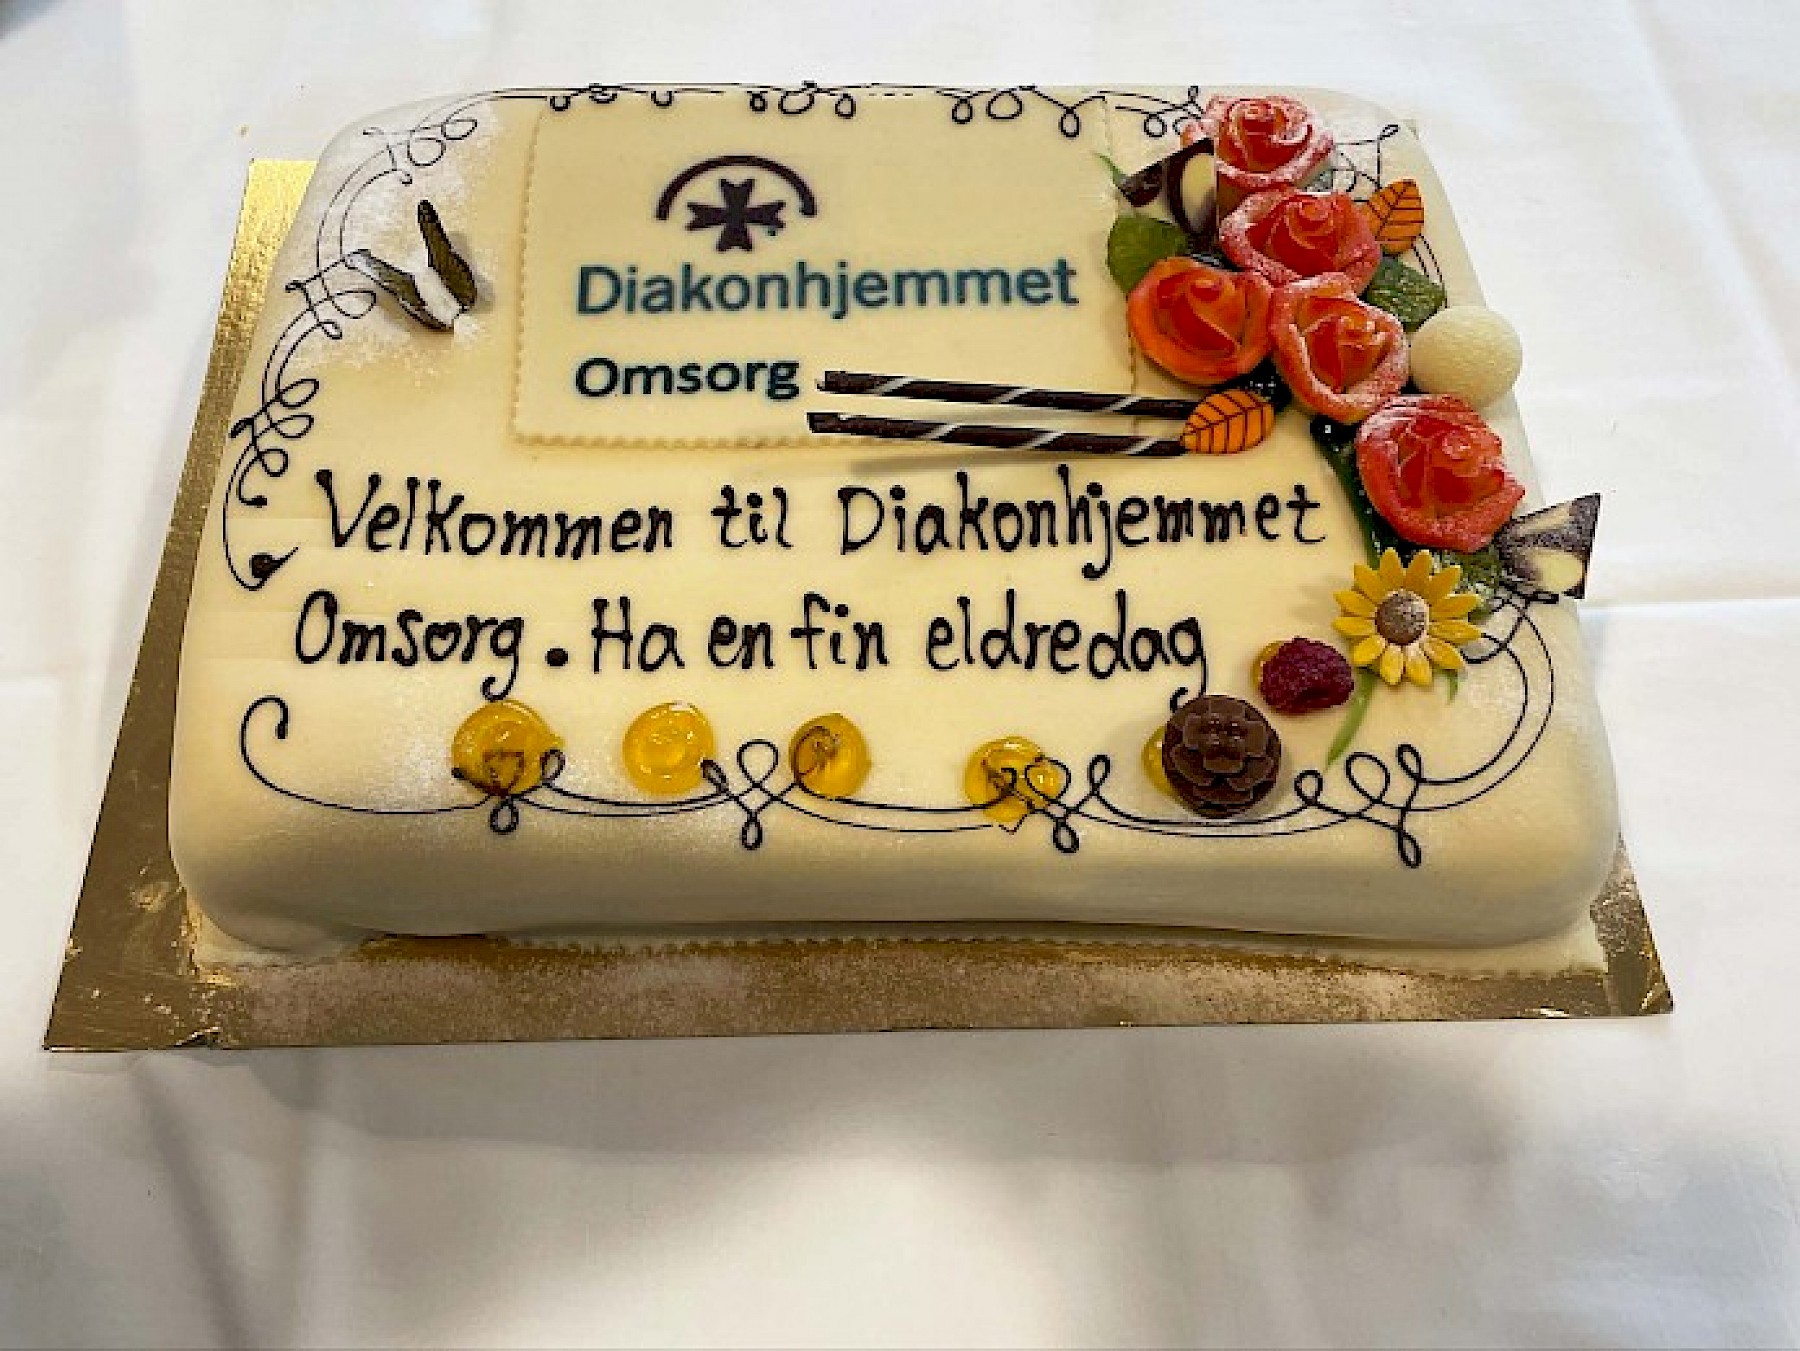 På kaken sto det: Velkommen til Diakonhjemmet Omsorg. Ha en fin eldredag.